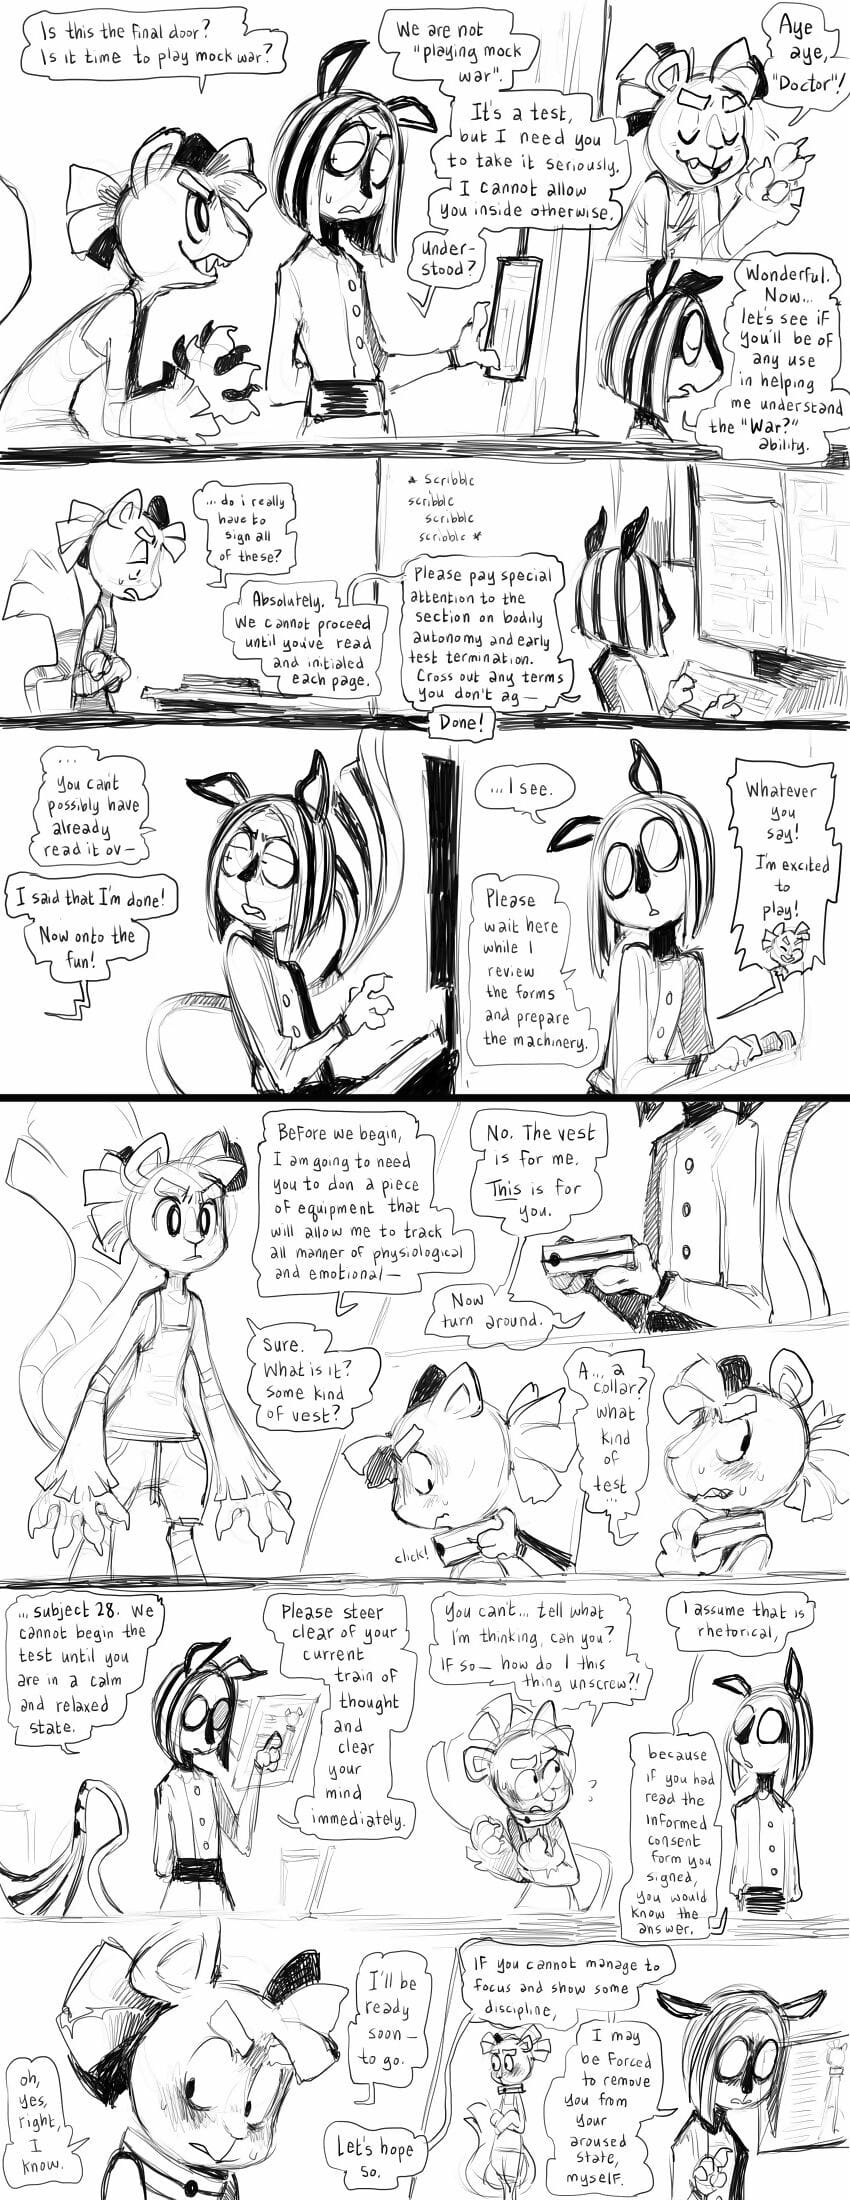 Sonstiges comics Teil 3 page 1